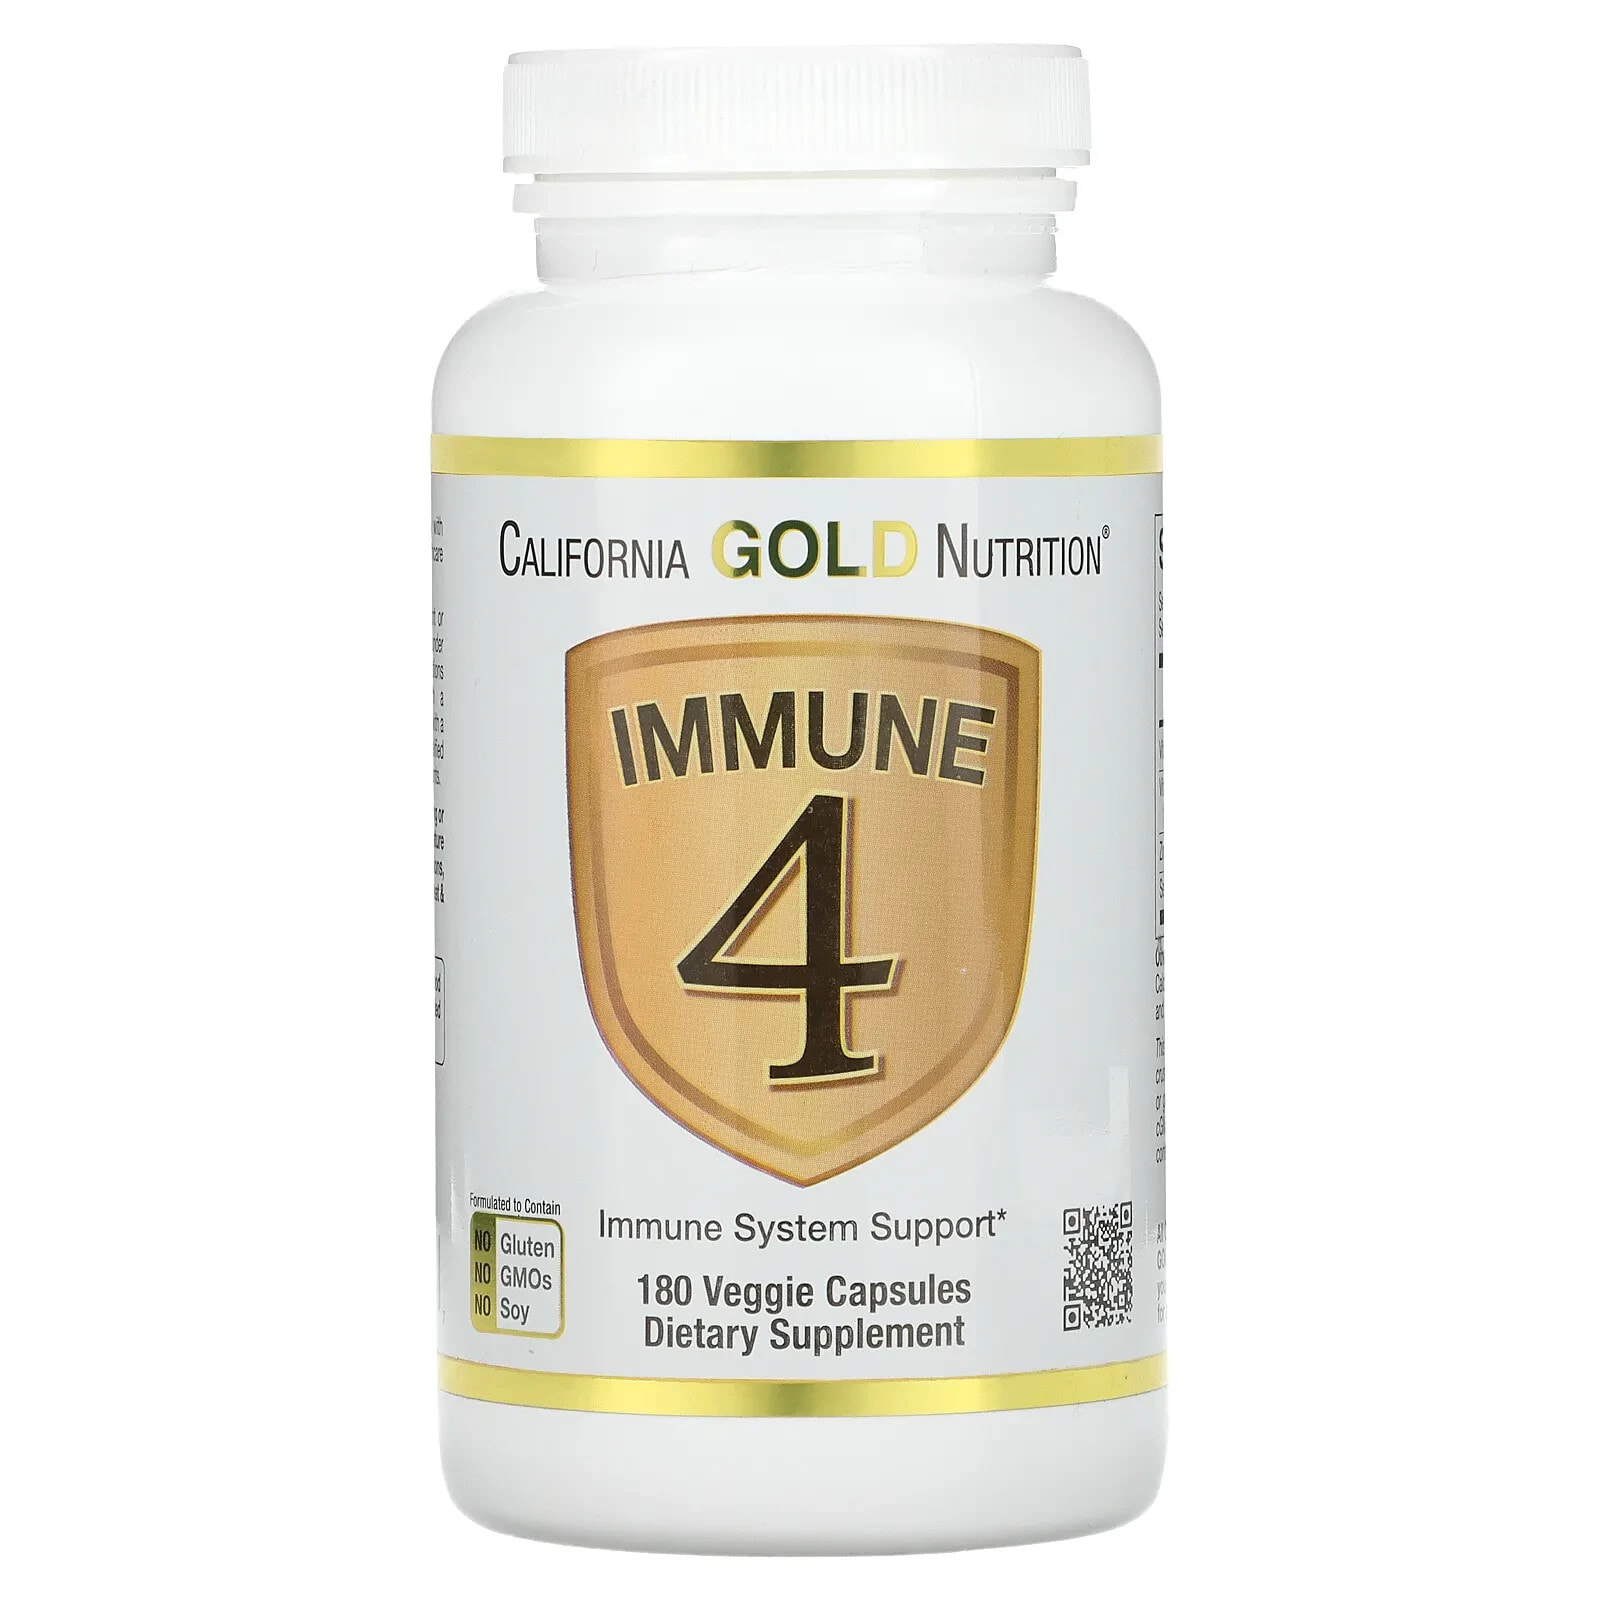 Immune 4, Immune System Support, 60 Veggie Capsules